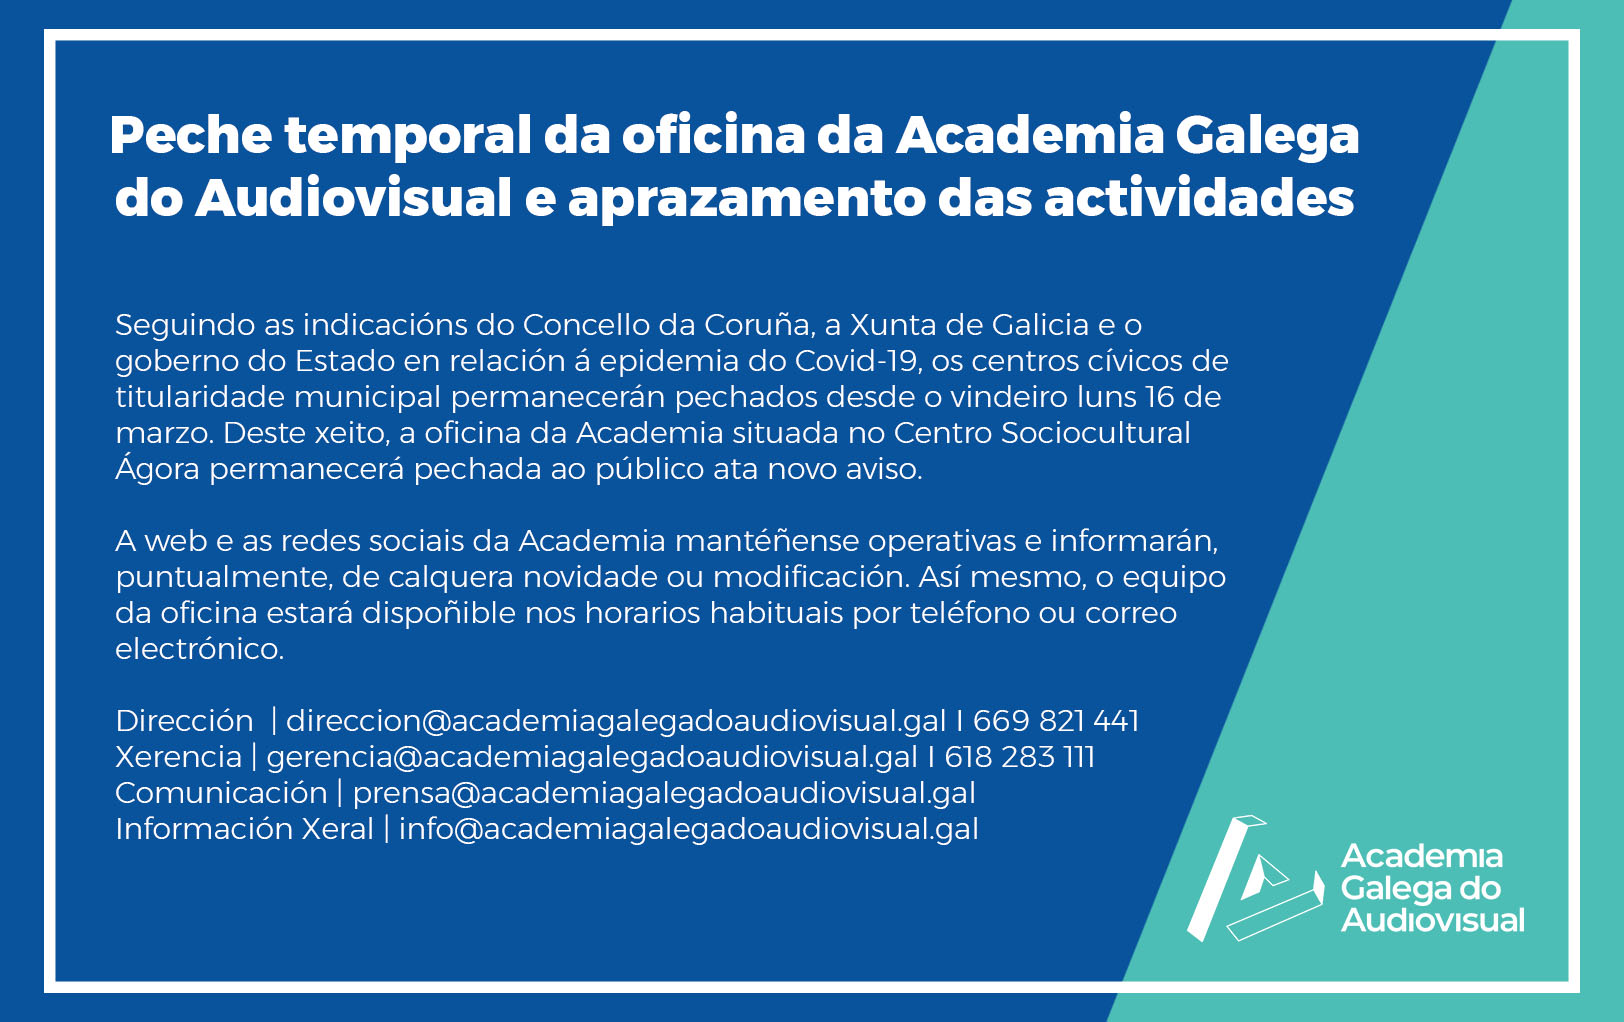 Peche temporal da oficina da Academia Galega do Audiovisual e aprazamento das actividades